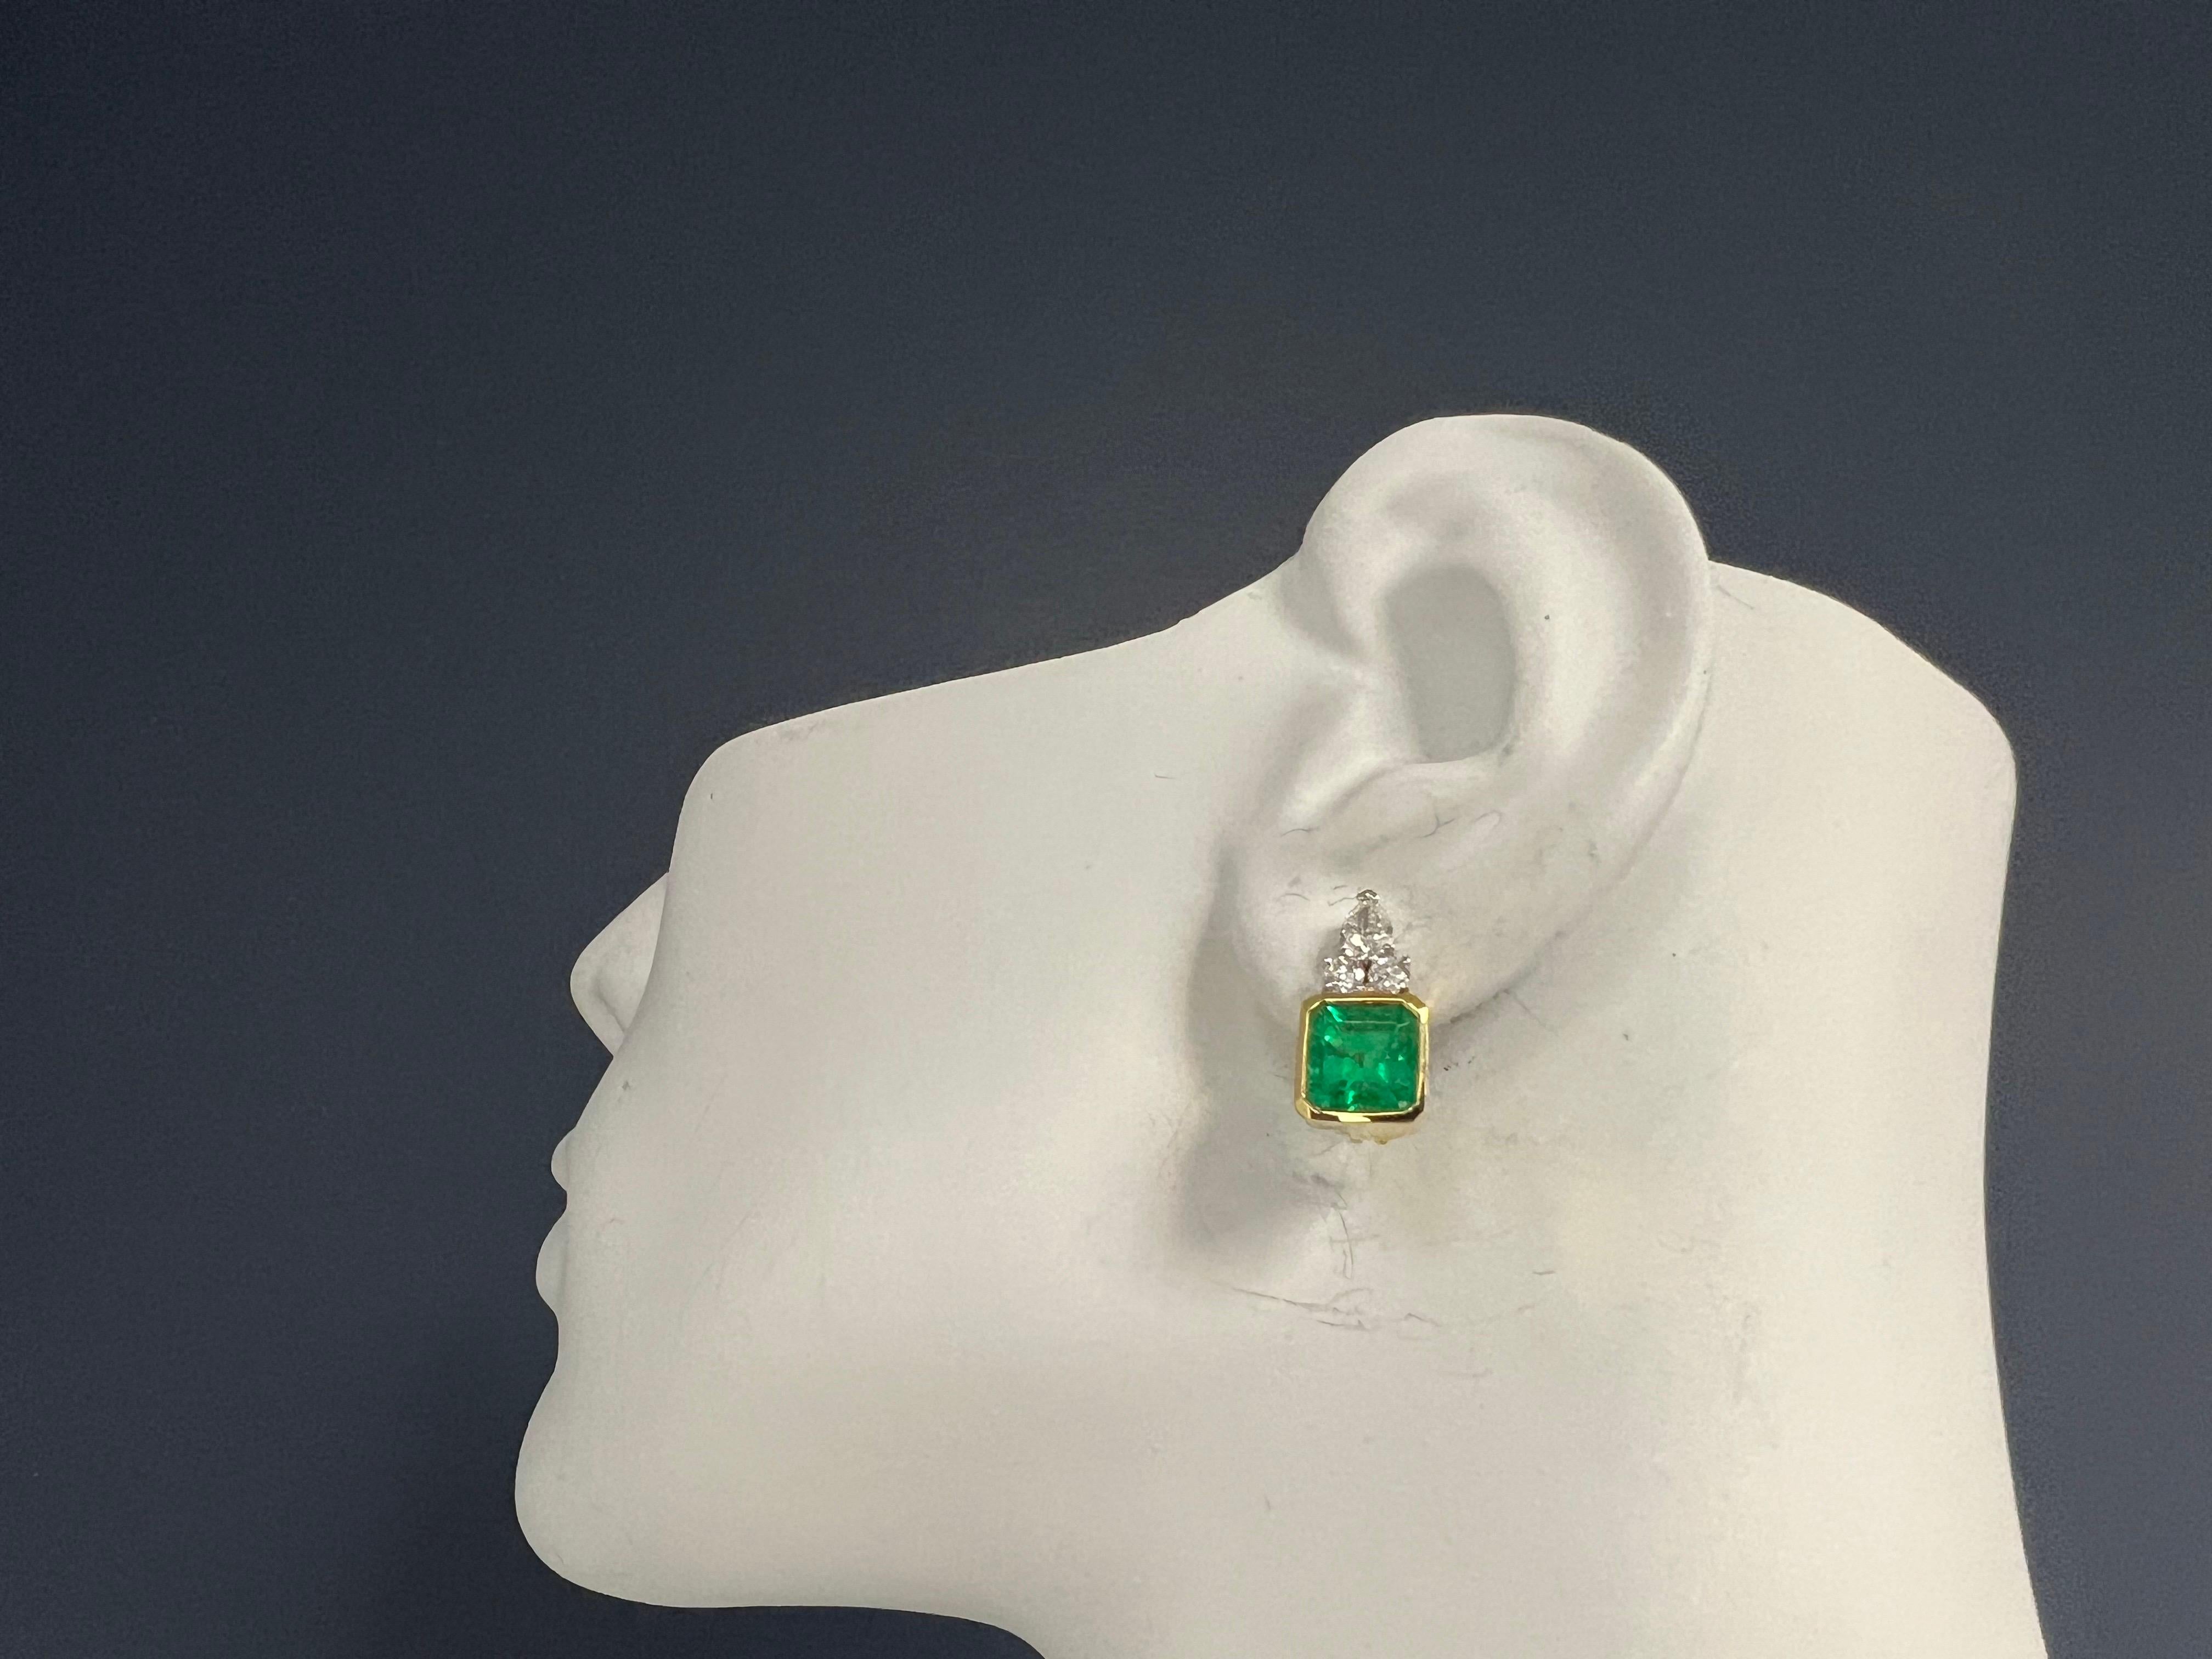 Ein prächtiges Paar GIA-zertifizierter Ohrringe mit einem grünen kolumbianischen Smaragd, gefasst in 18 Karat Gelb- und Weißgold. 

Die Smaragde sind in der Lünette gefasst und wiegen etwa 4,75 Karat. Der eine hat etwa 2,25 Karat (7,75x7,7x5,67 mm)